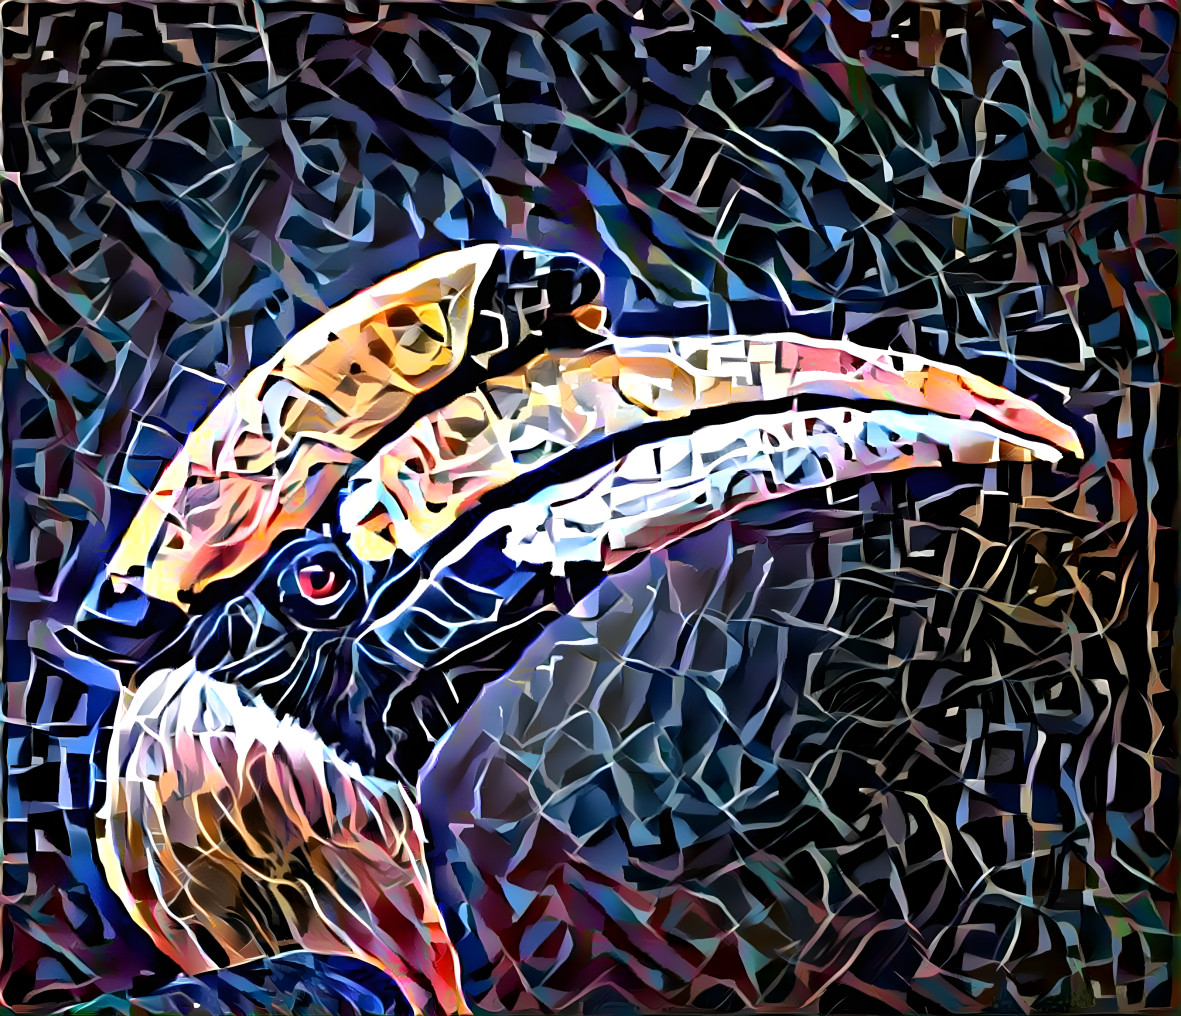 Hornbill 